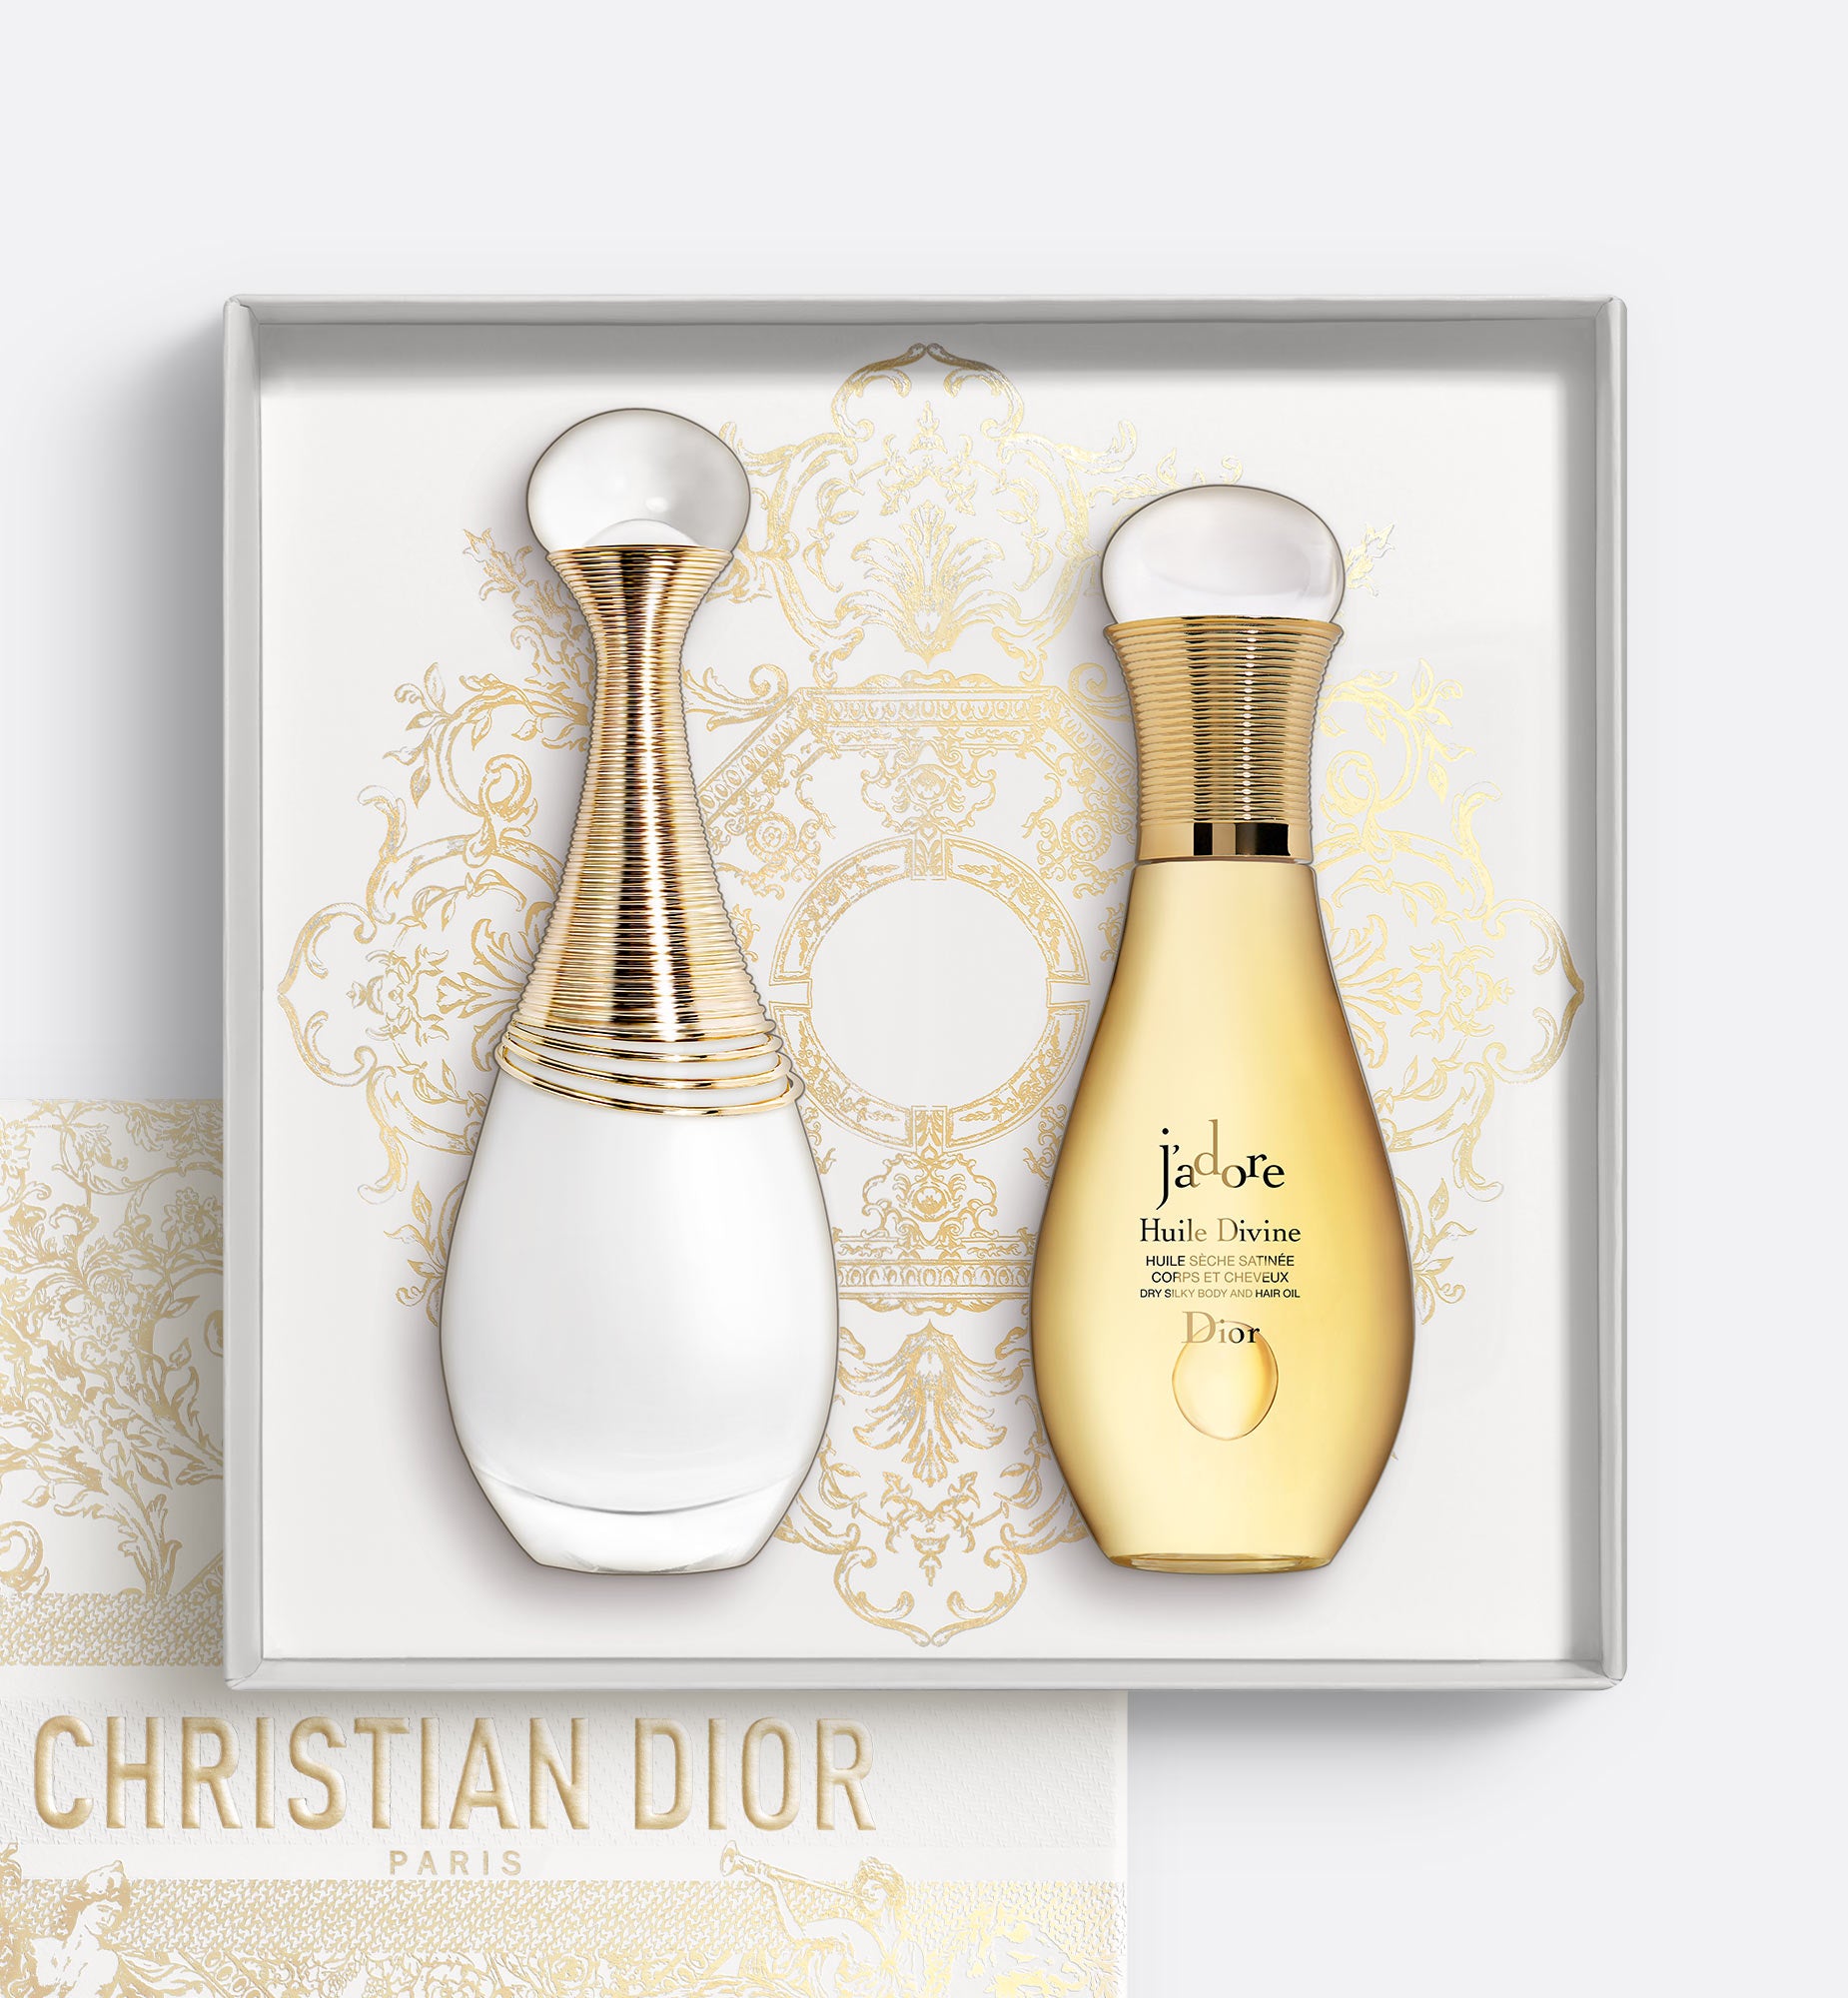 J'adore Parfum d’eau & J'adore Huile Divine Gift Set | Alcohol-Free Eau de Parfum and Dry Oil